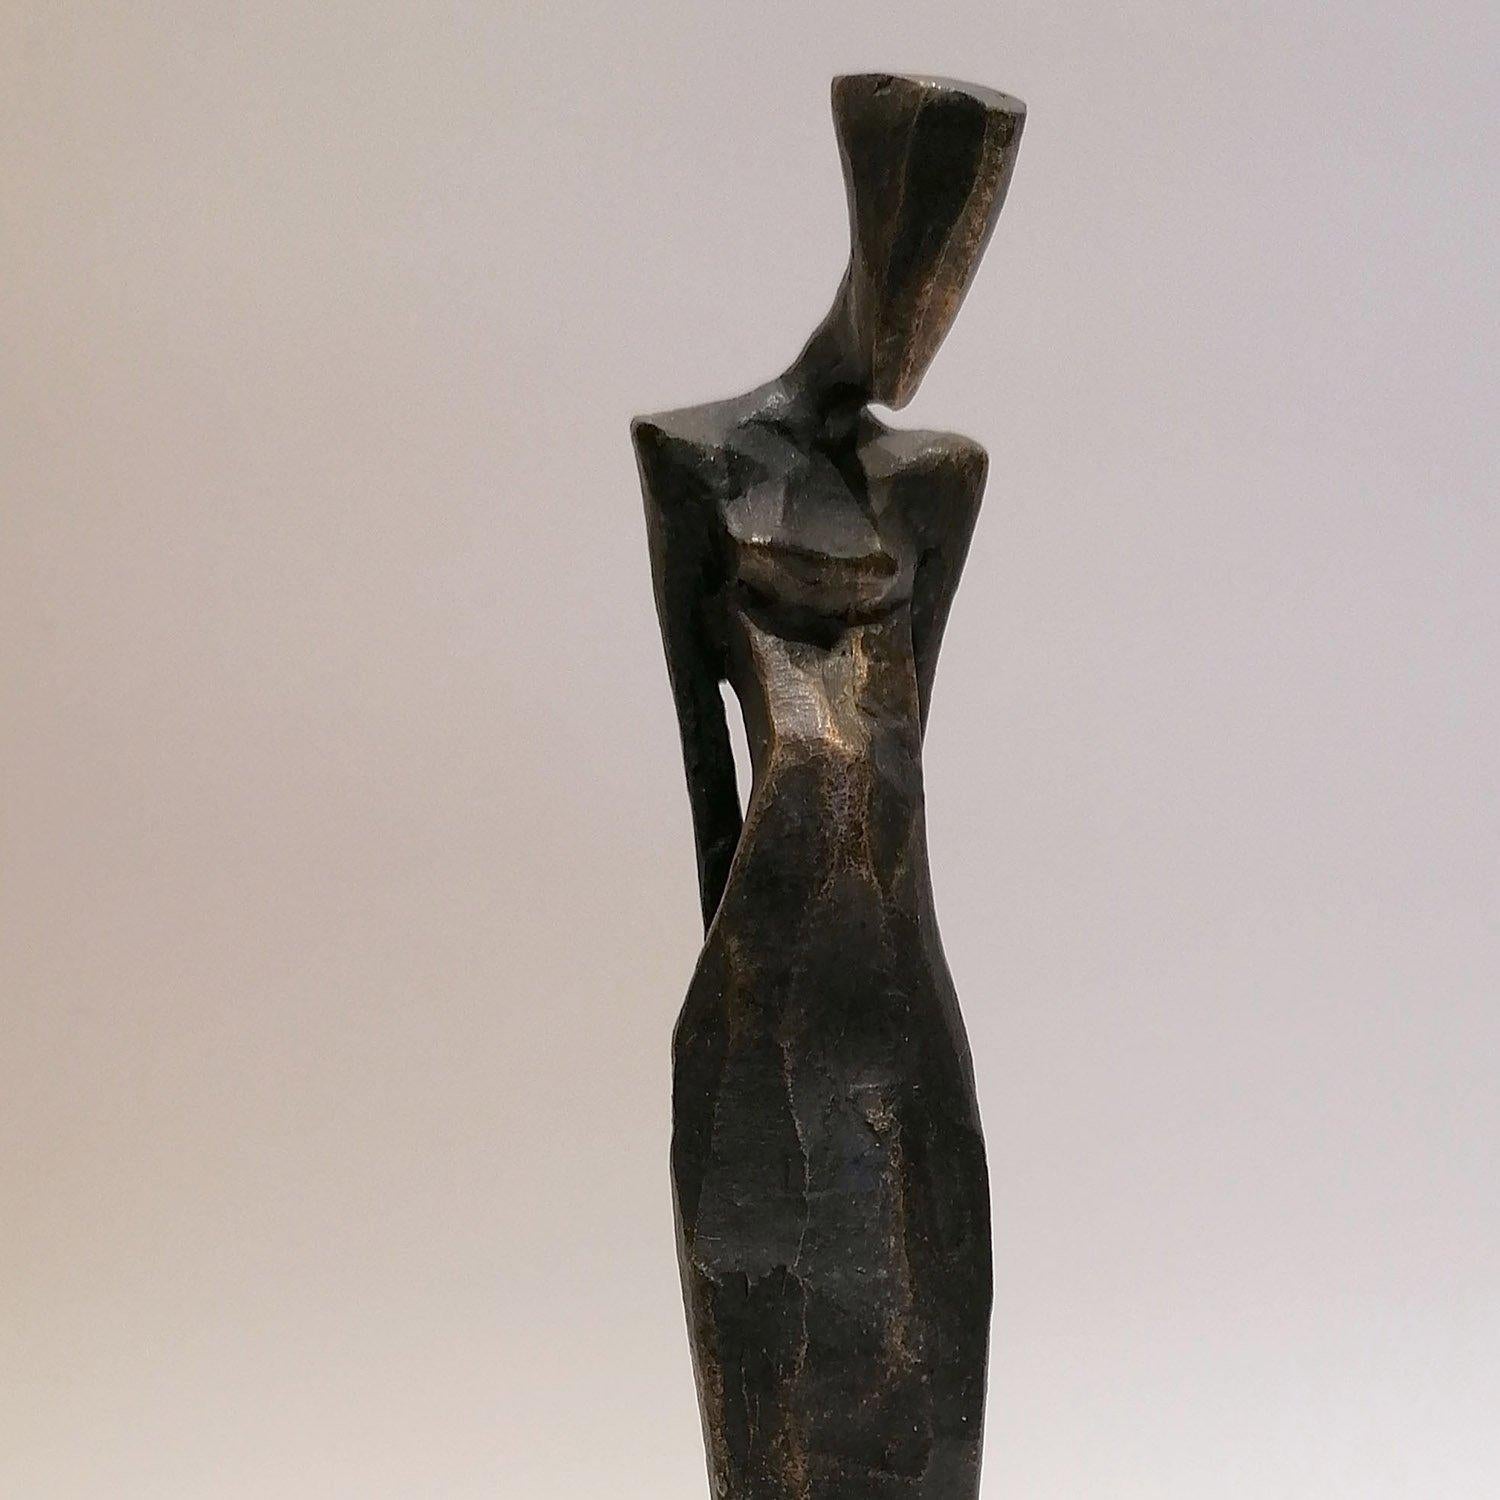 Nando Kallweit Annalies bronze sculpture, edition of 25

Dimensions: 21cm tall
